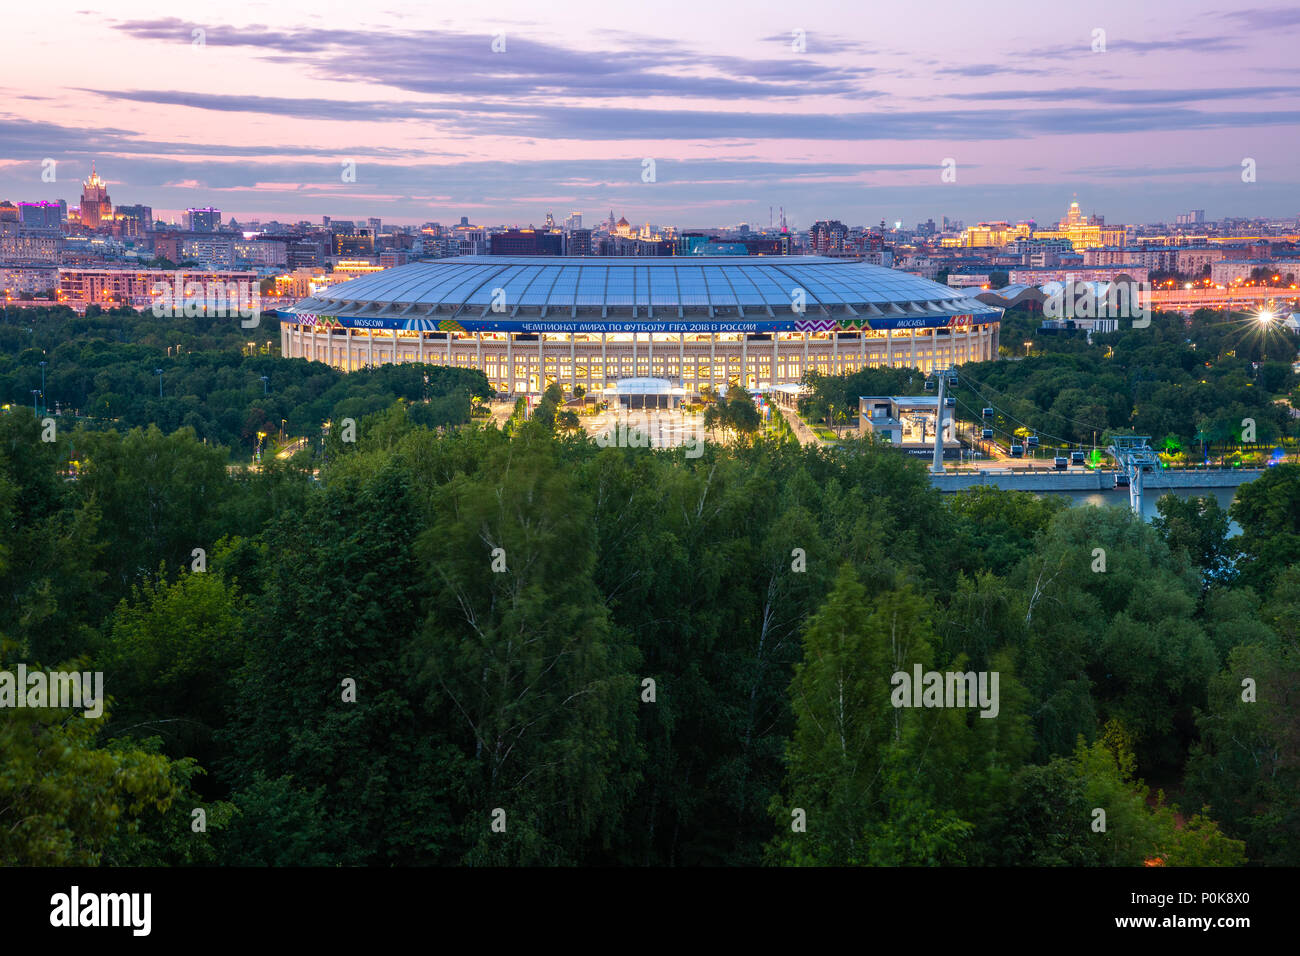 Mosca, Russia - Giugno 06, 2018: la vista del tramonto di Luzhniki Stadium da Sparrow Hills Observation Deck, il principale stadium di 2018 FIFA World Cup, 0 giugno Foto Stock